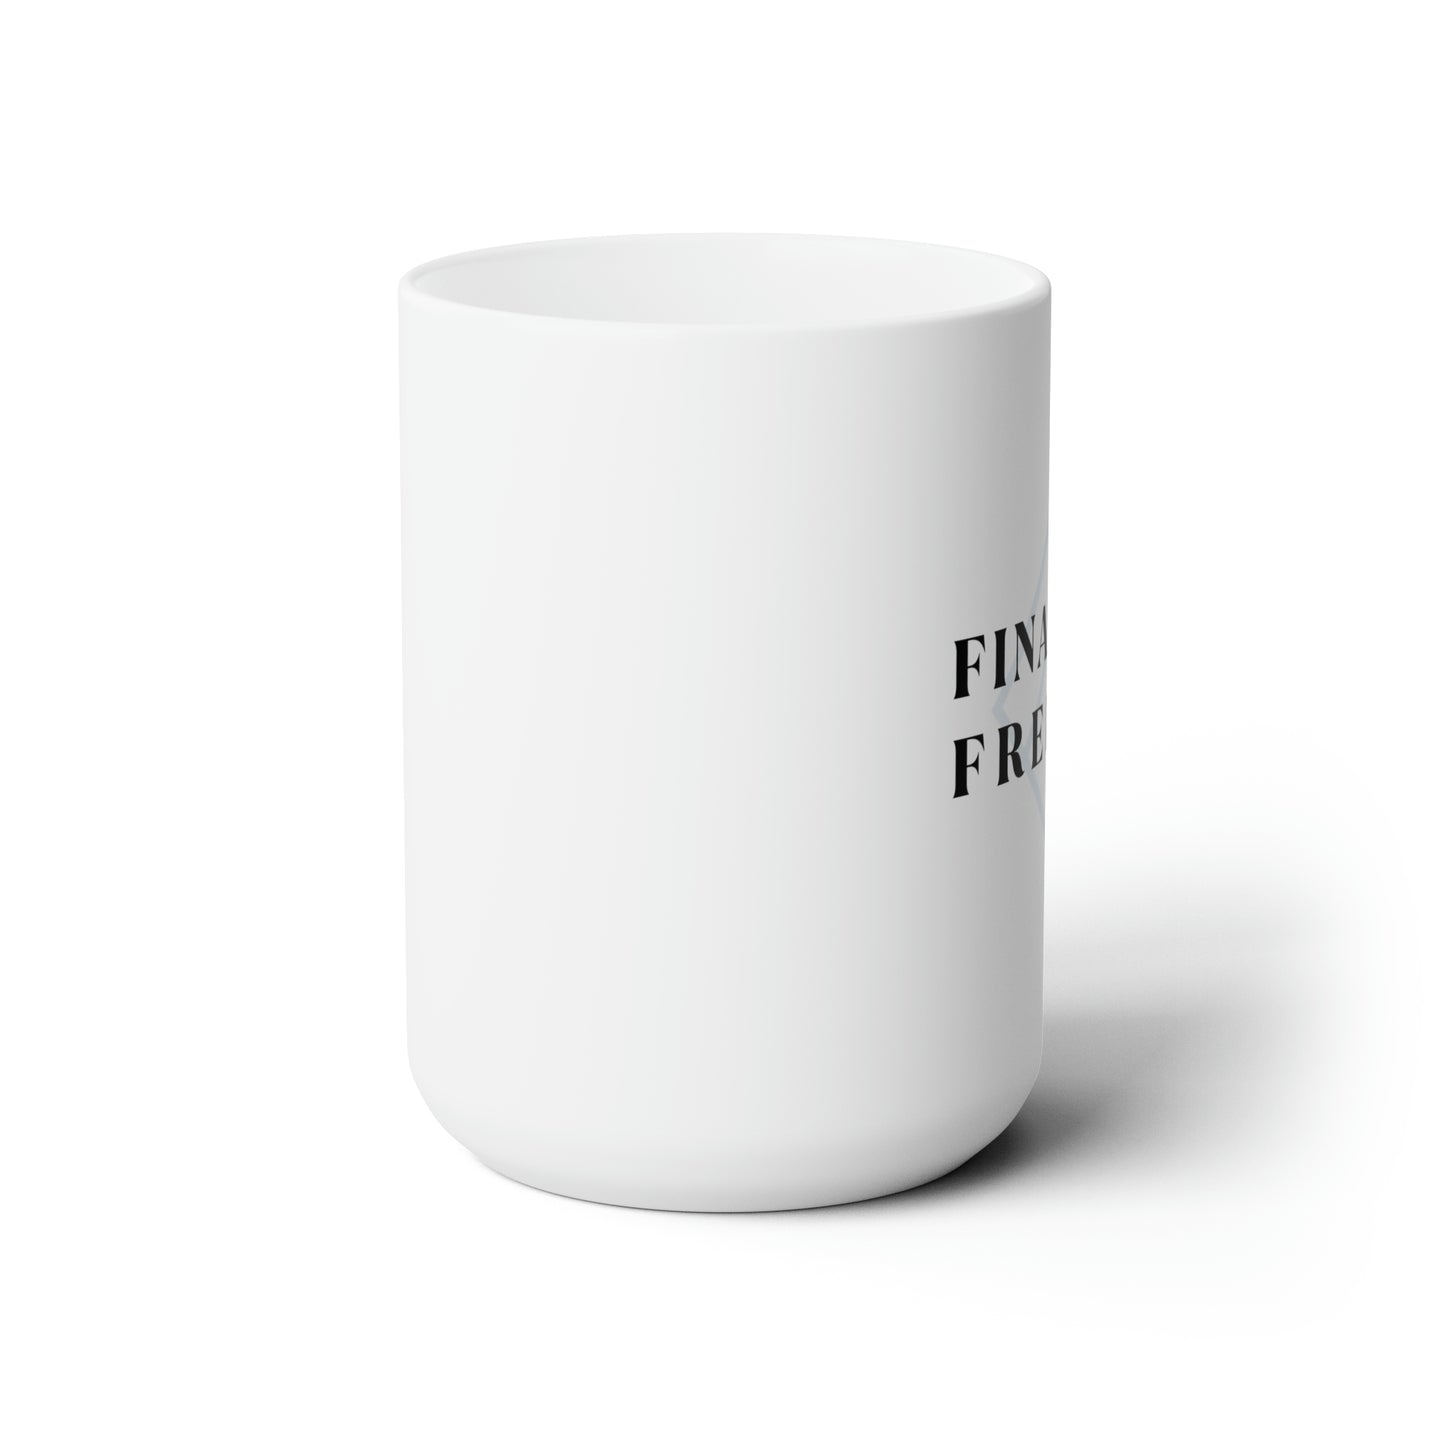 Financial Freedom Logo Coffee Mug 15oz